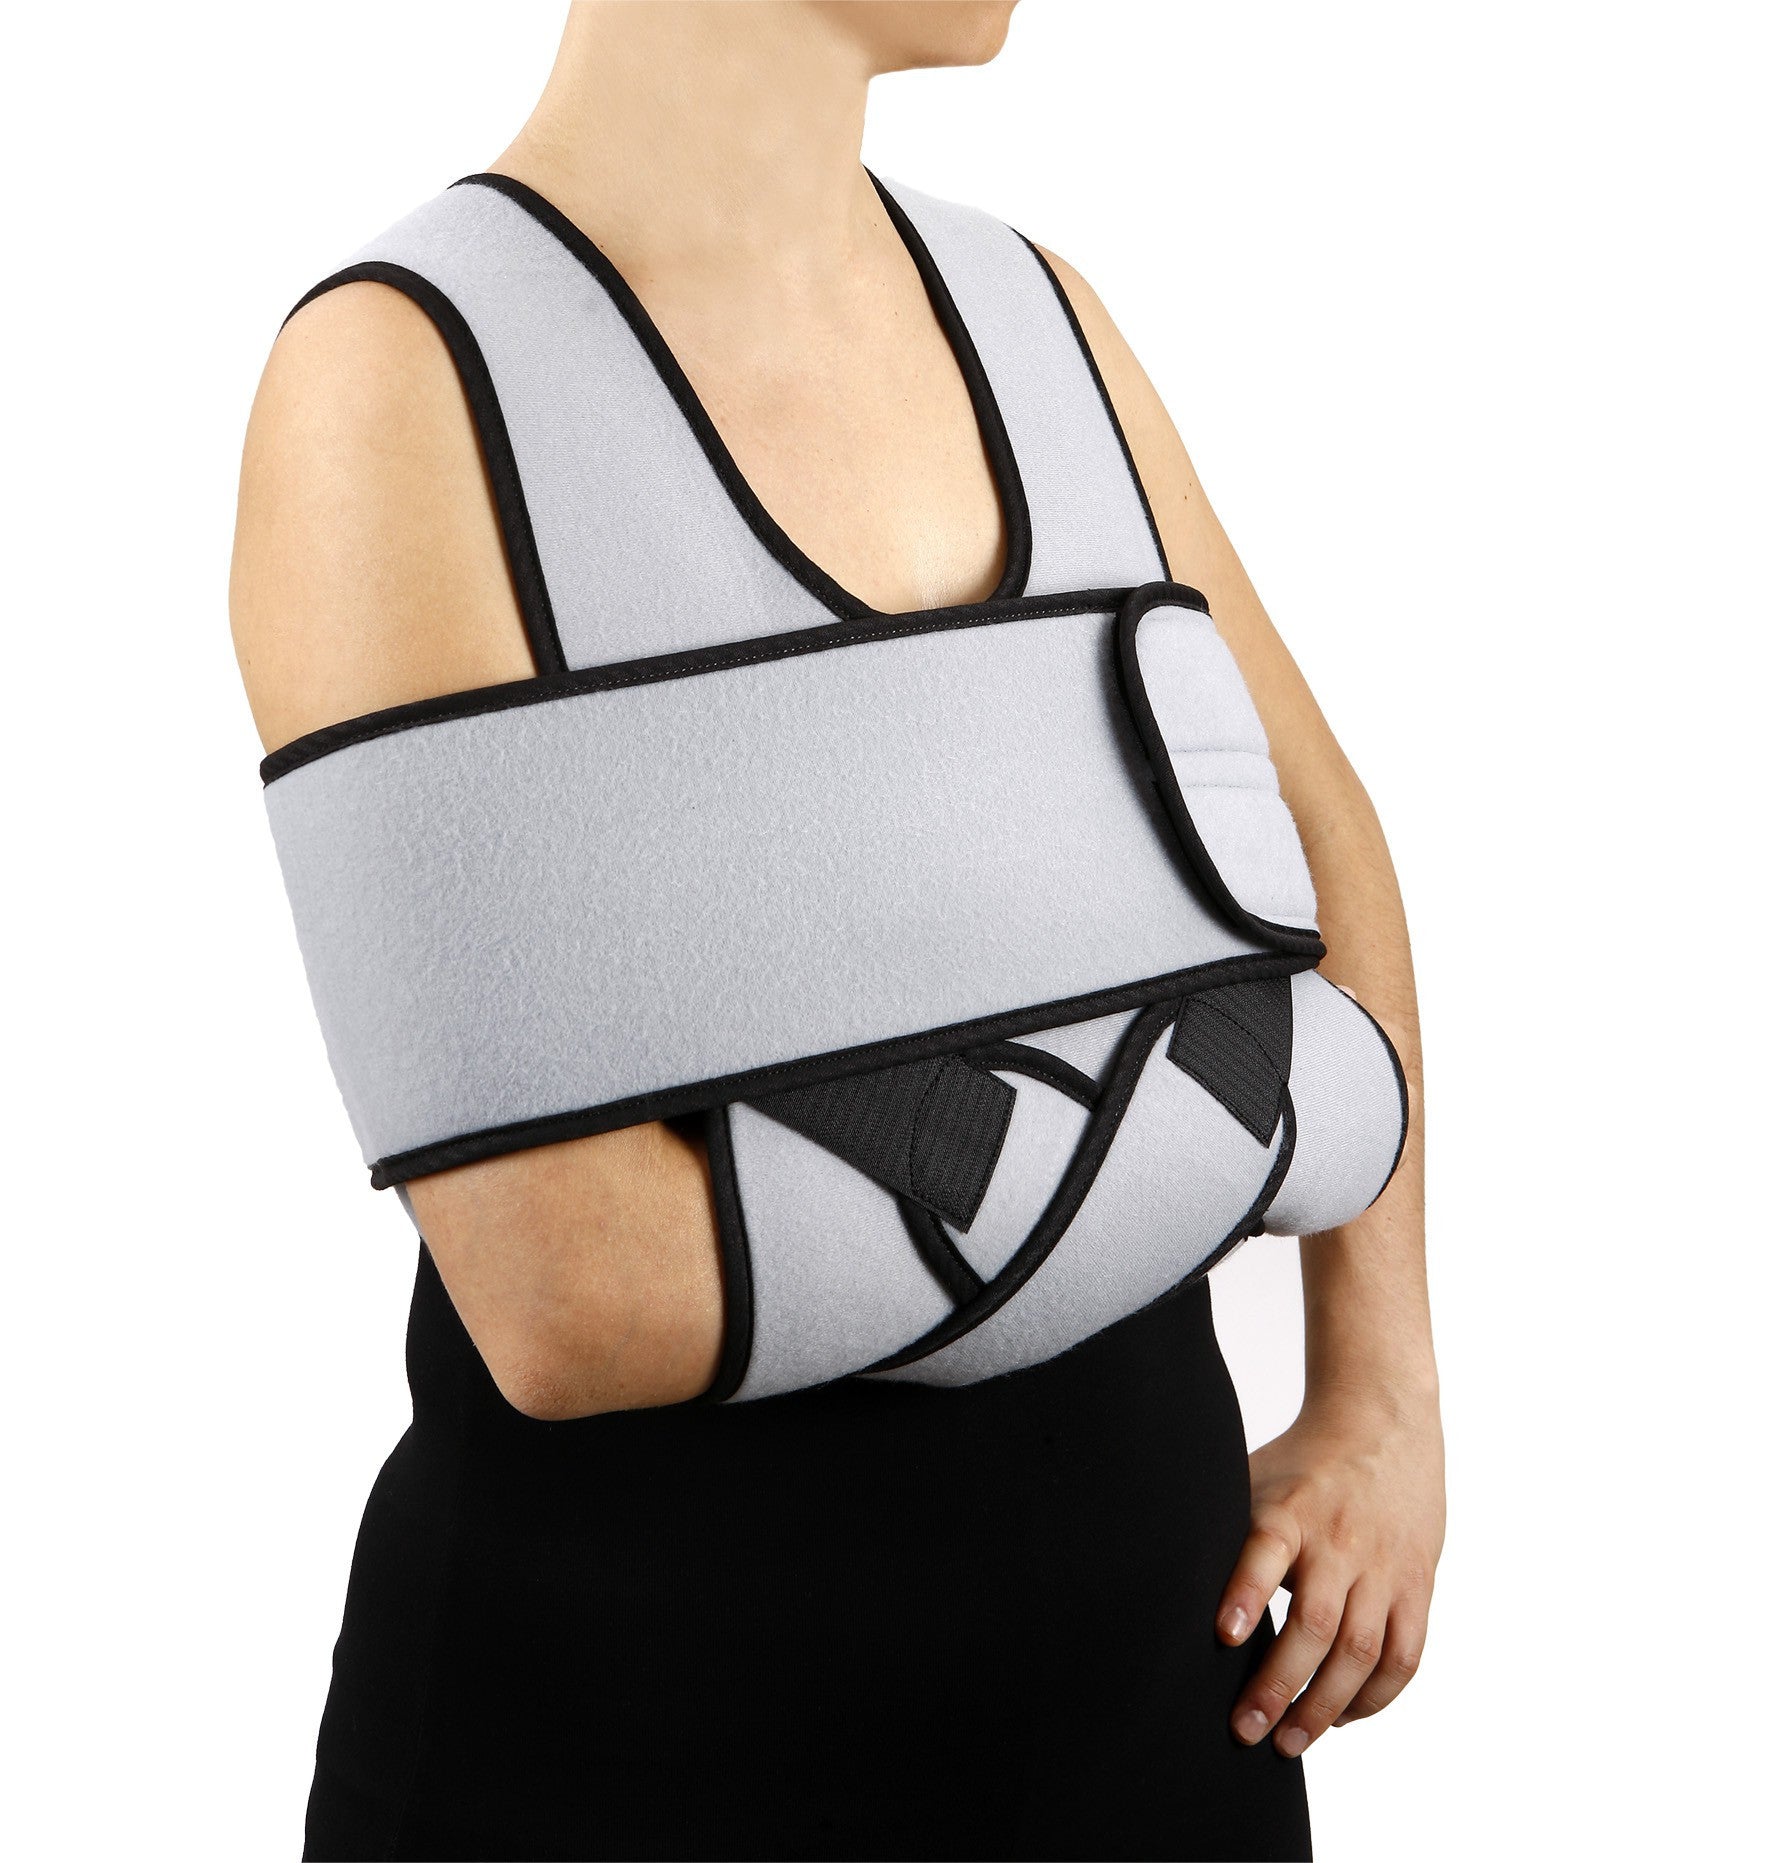 Immobilizzatore per braccio-spalla Art.9338 ORIONE®